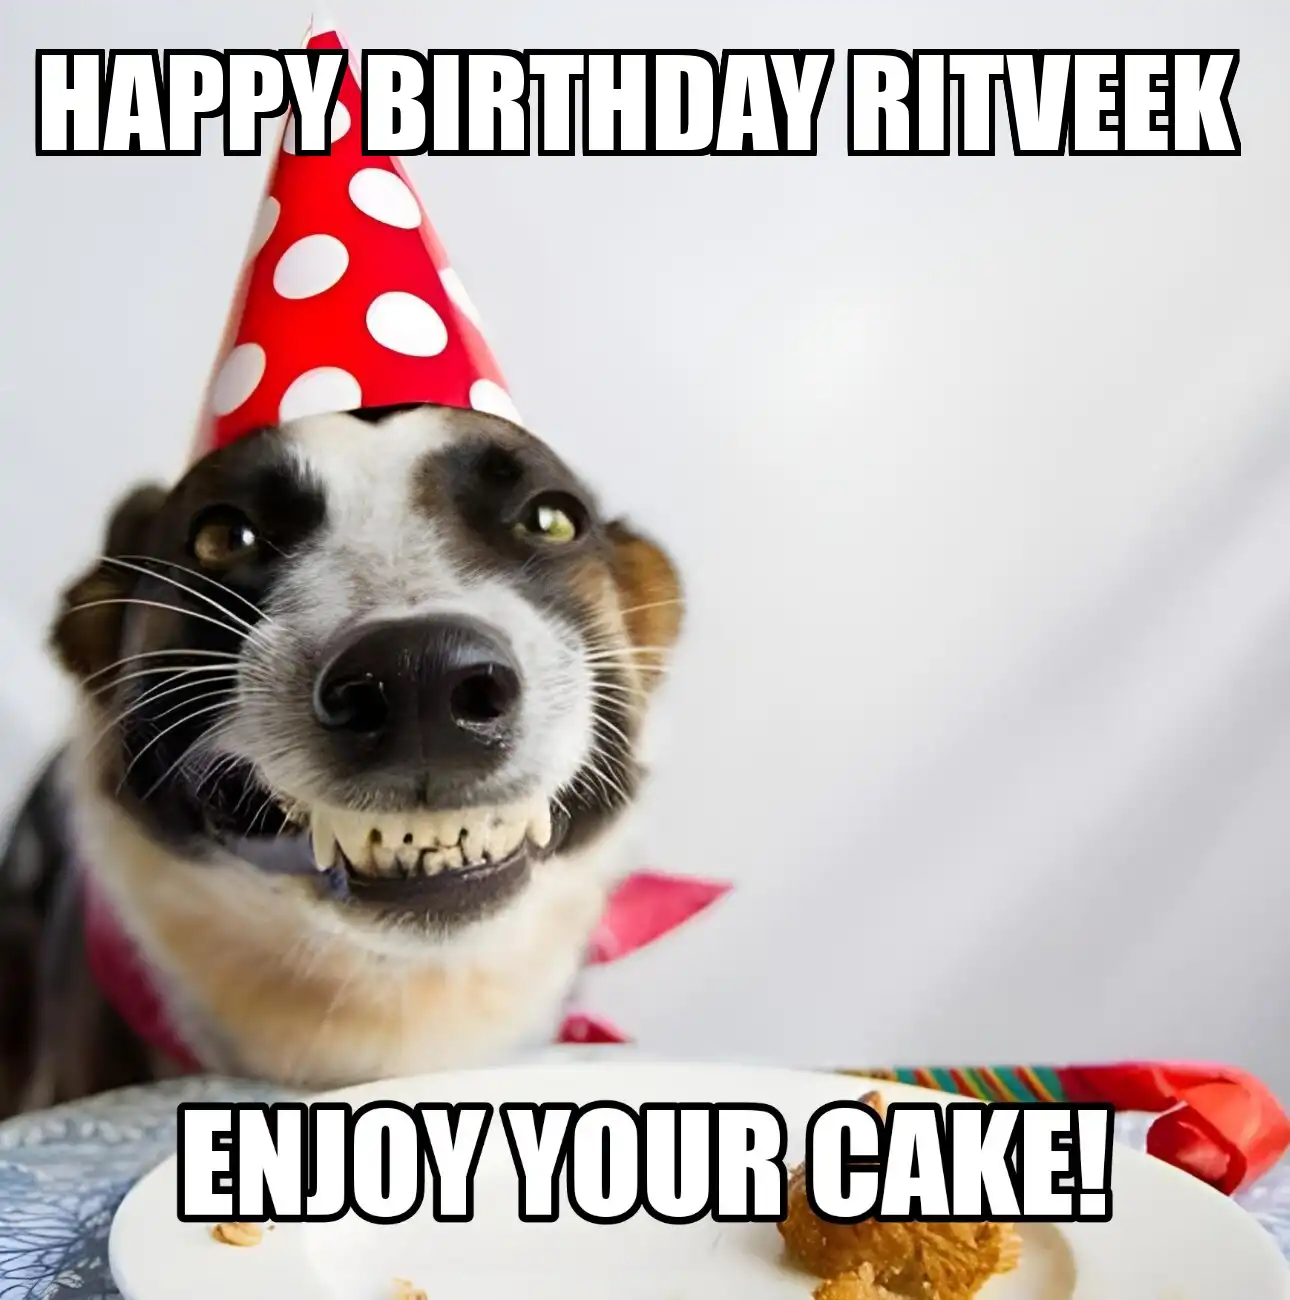 Happy Birthday Ritveek Enjoy Your Cake Dog Meme